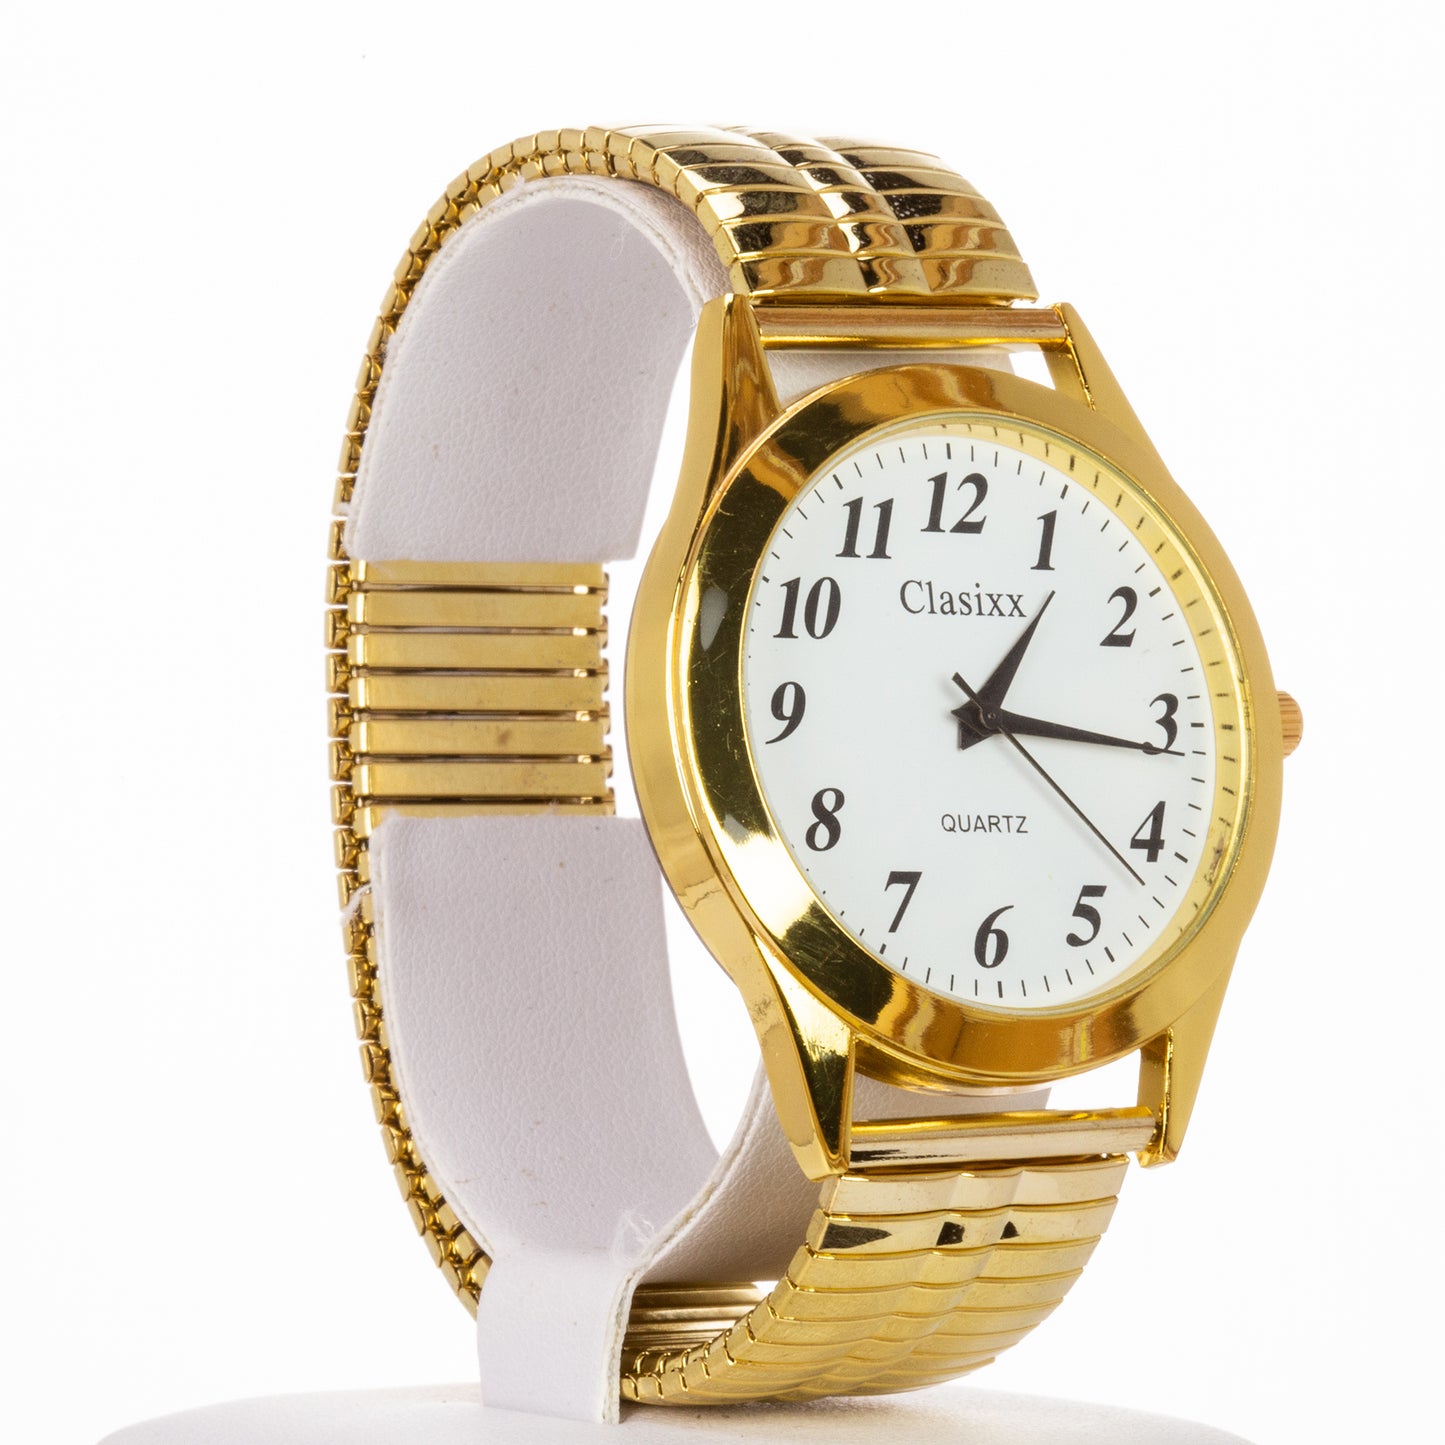 Relógio de homem clássico com pulseira de aço inoxidável e movimento de alta qualidade, com banho de cor de ouro